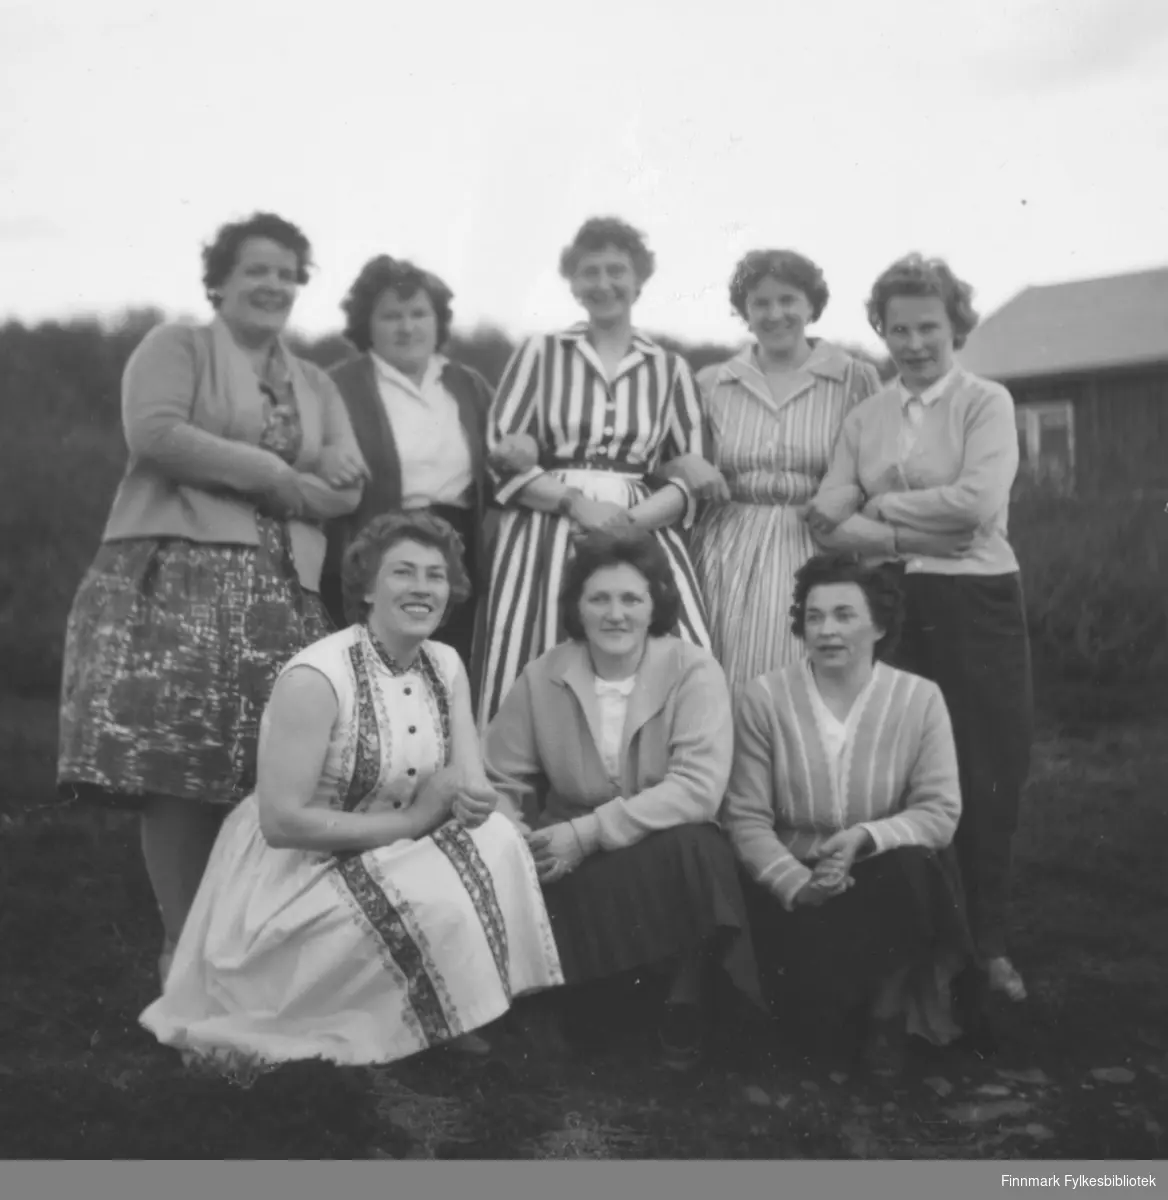 Syforeningen til Ragnhild Ebeltoft på hyttetur i Laksebybukta hos Tulle Johnsen, ca. 1960